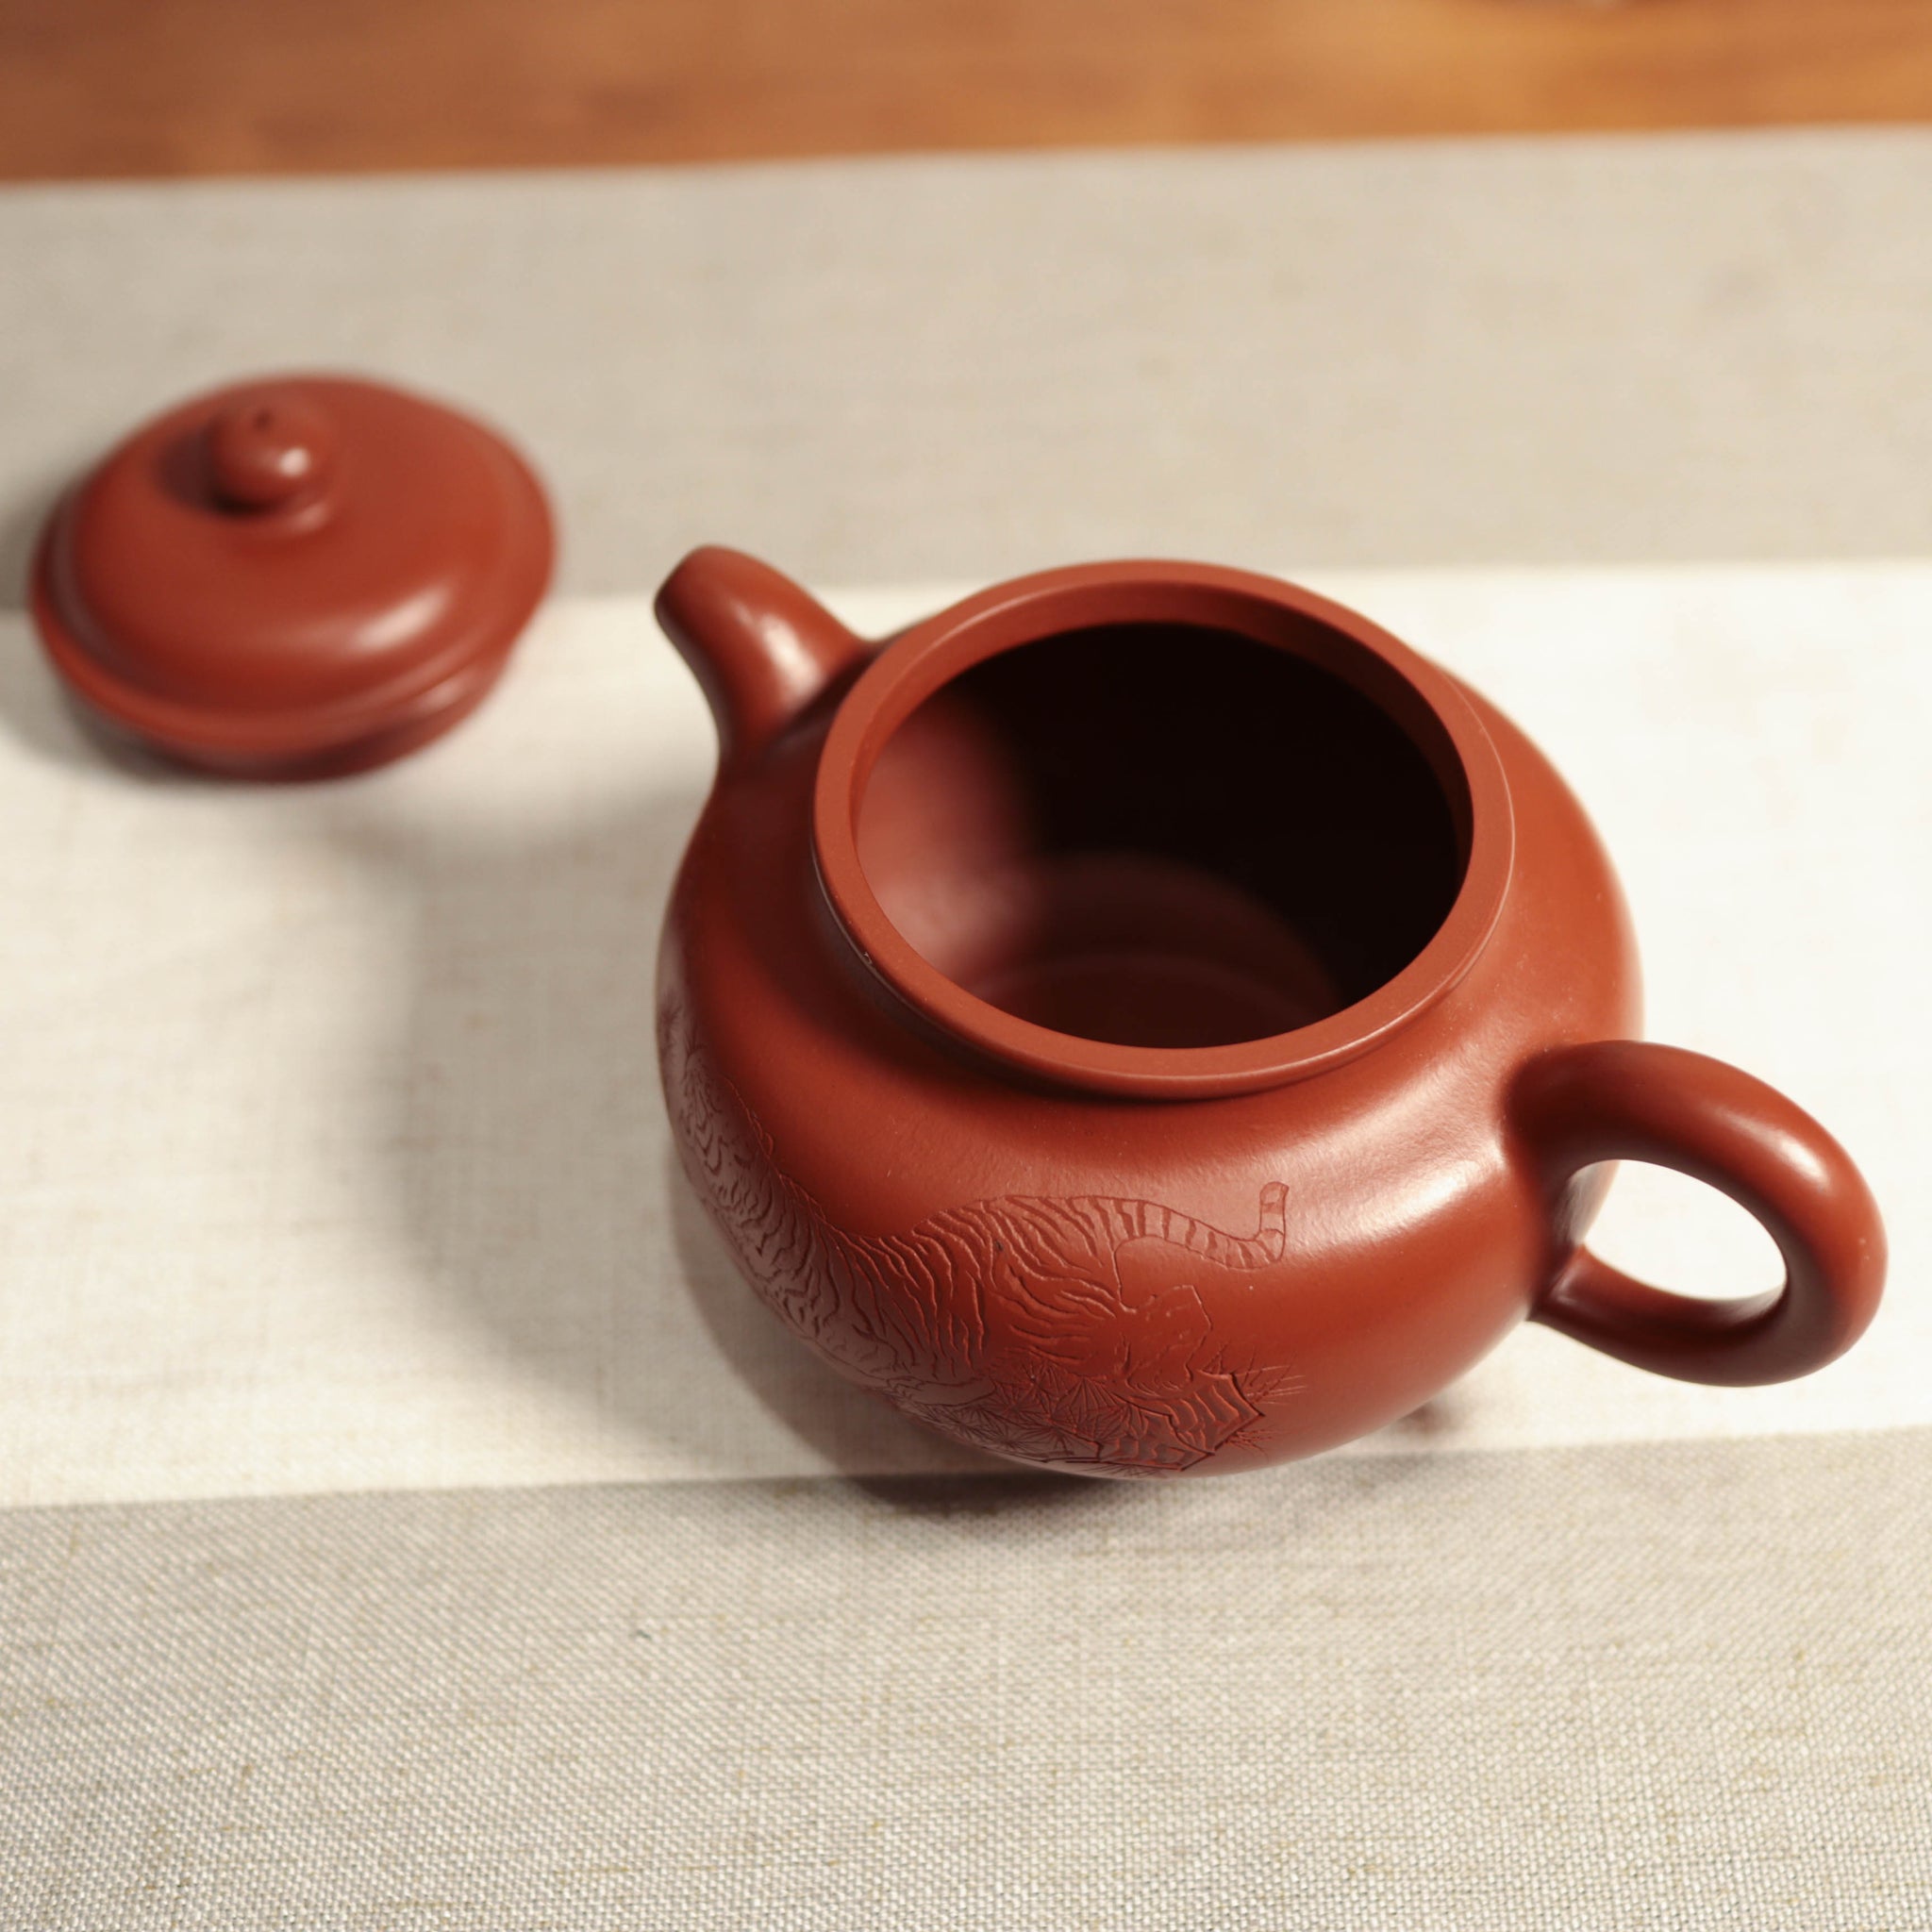 （已售出）【雄風】朱泥雕刻紫砂茶壺